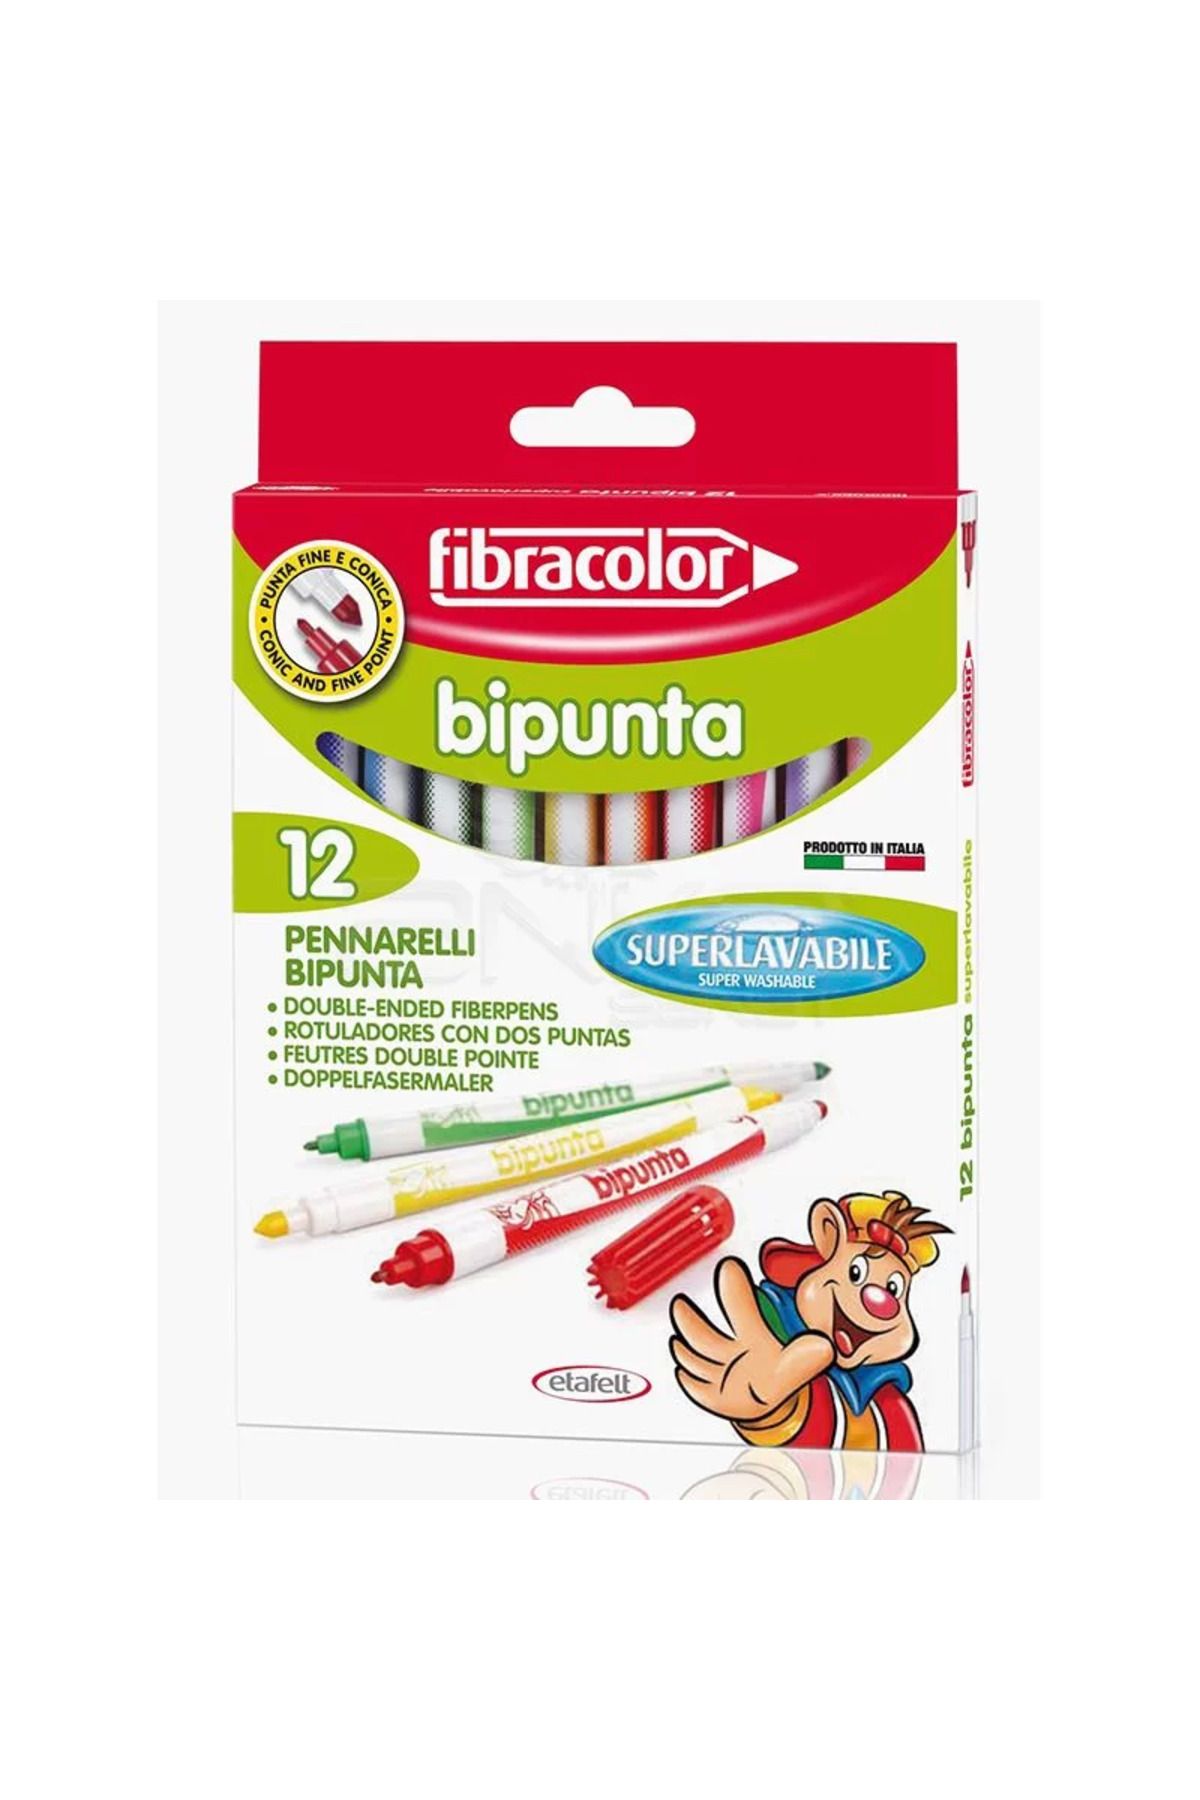 Fibracolor Bipunta Keçeli Boya Takımı 12 Renk